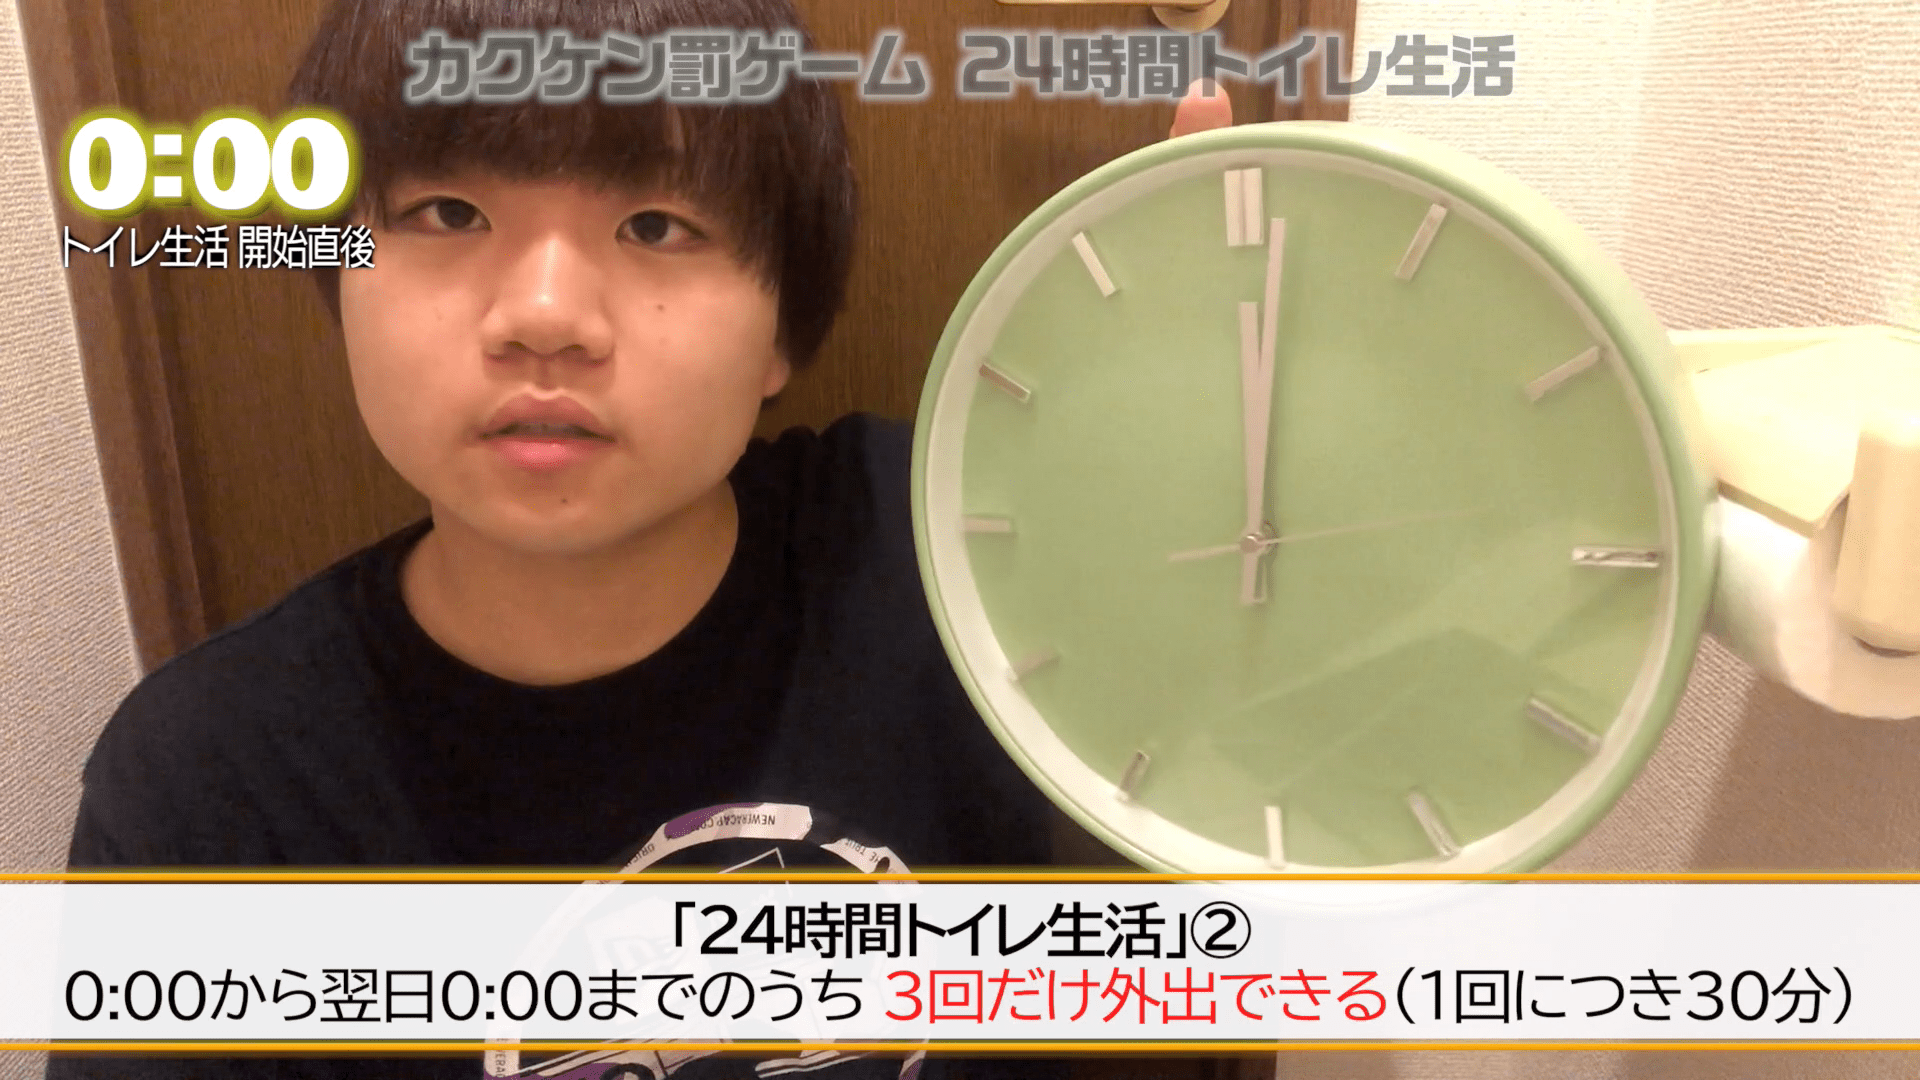 24時間トイレで生活してみたシンタメ神戸大学生のためのまとめサイトWeeBee